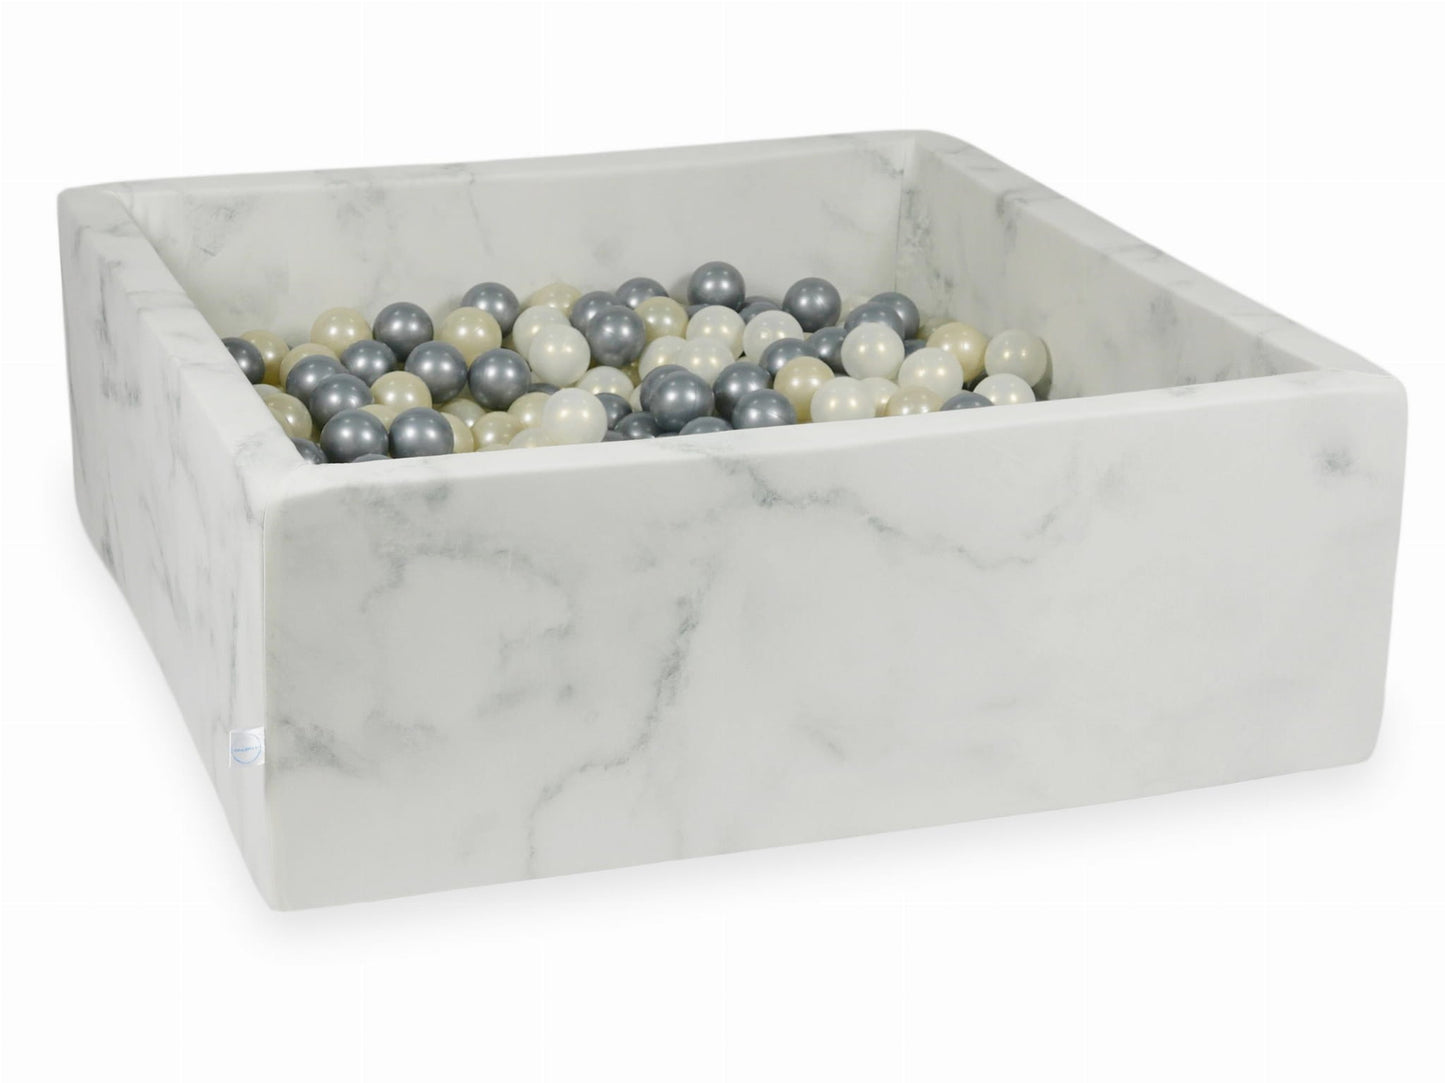 Piscine à Balles 110x110x40 marbre avec balles 600 pcs (or clair, argent, iridescent)